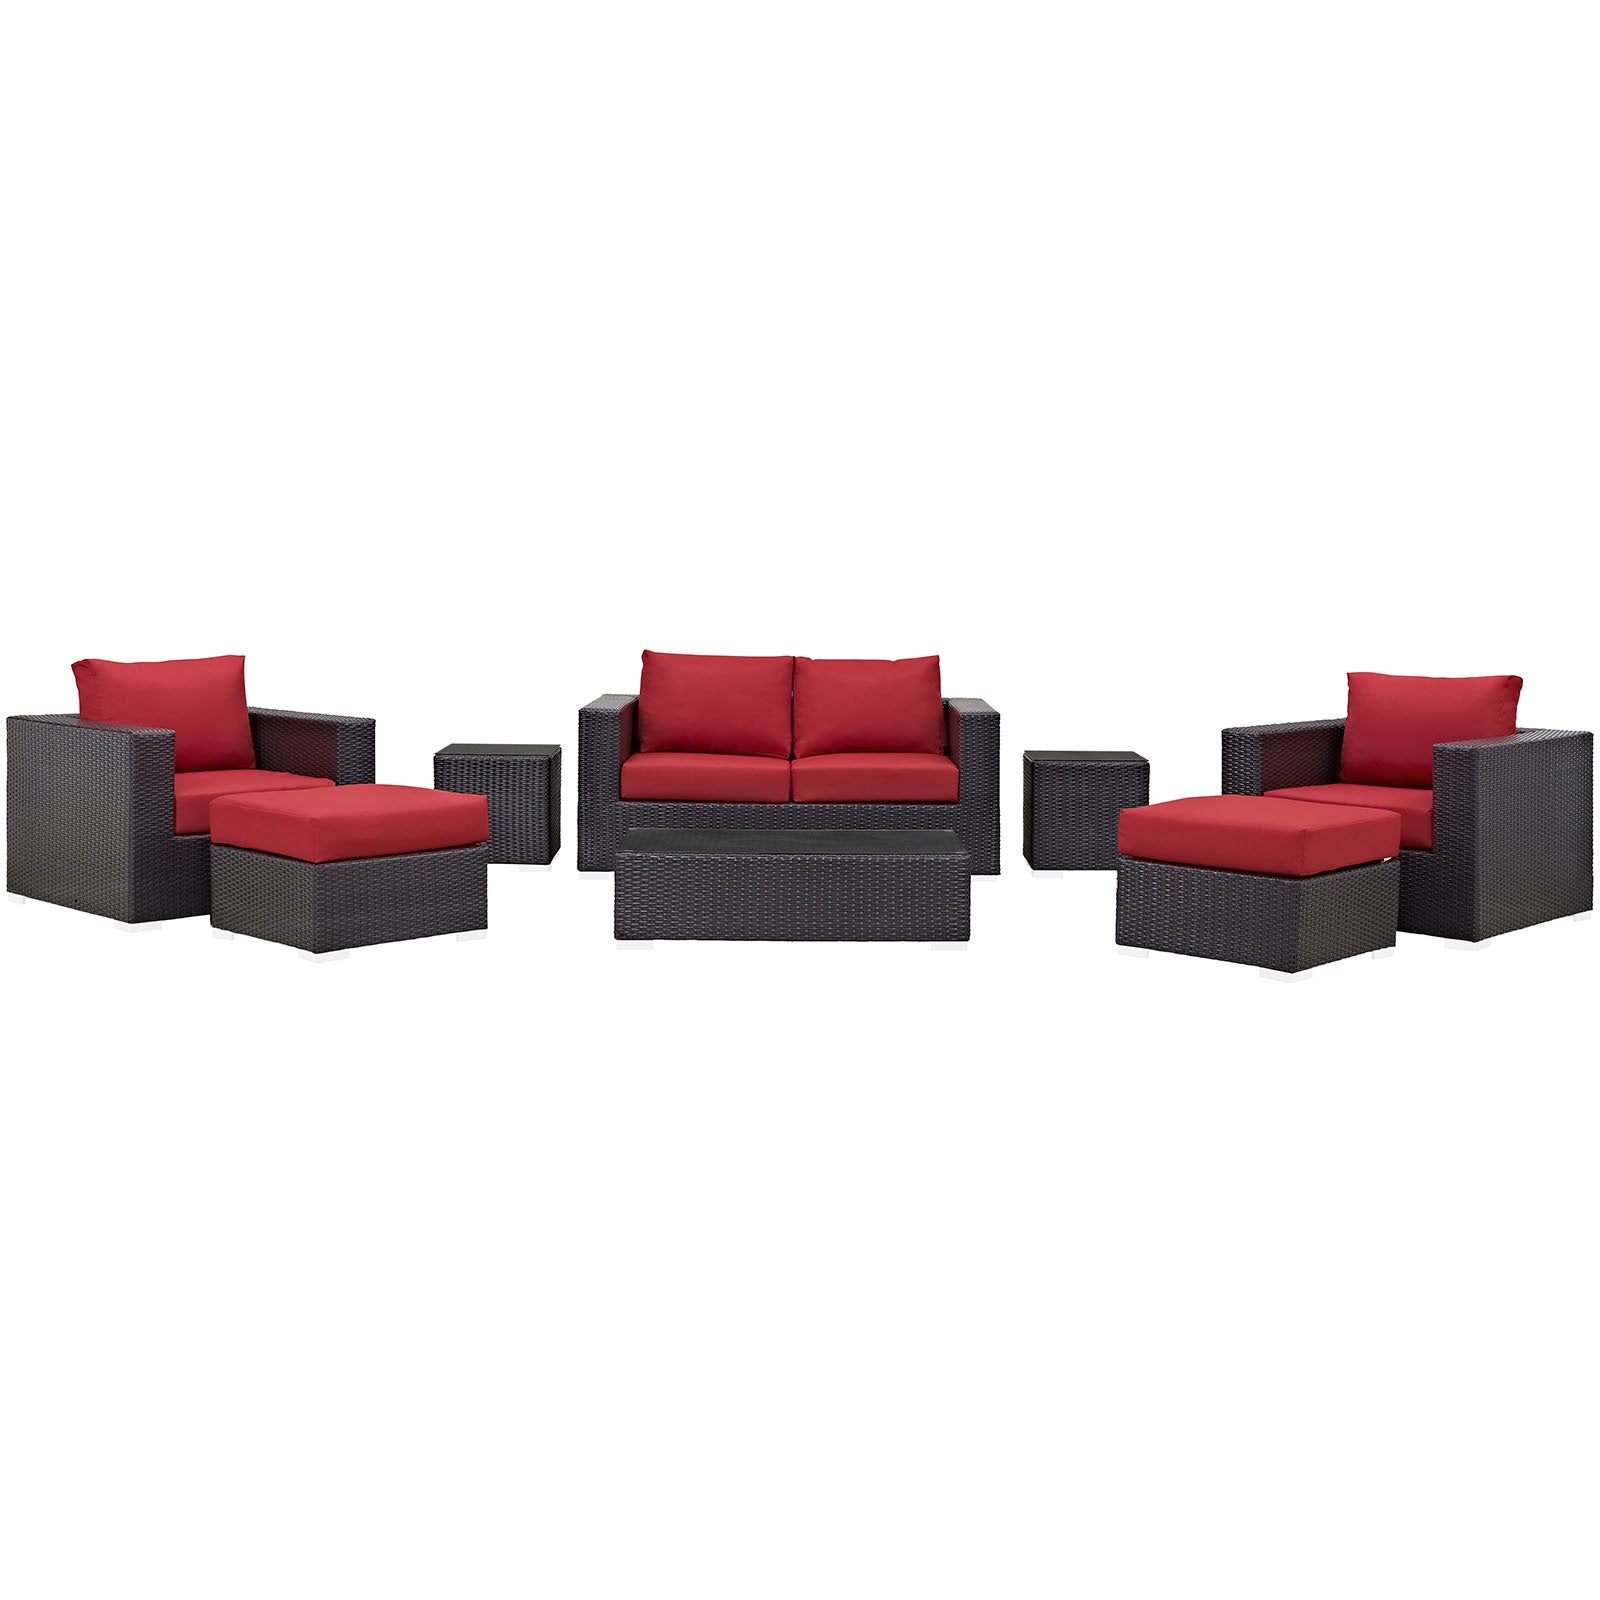 Modway Outdoor Conversation Sets - Convene 8 Piece Outdoor Patio Sofa Set Espresso Red